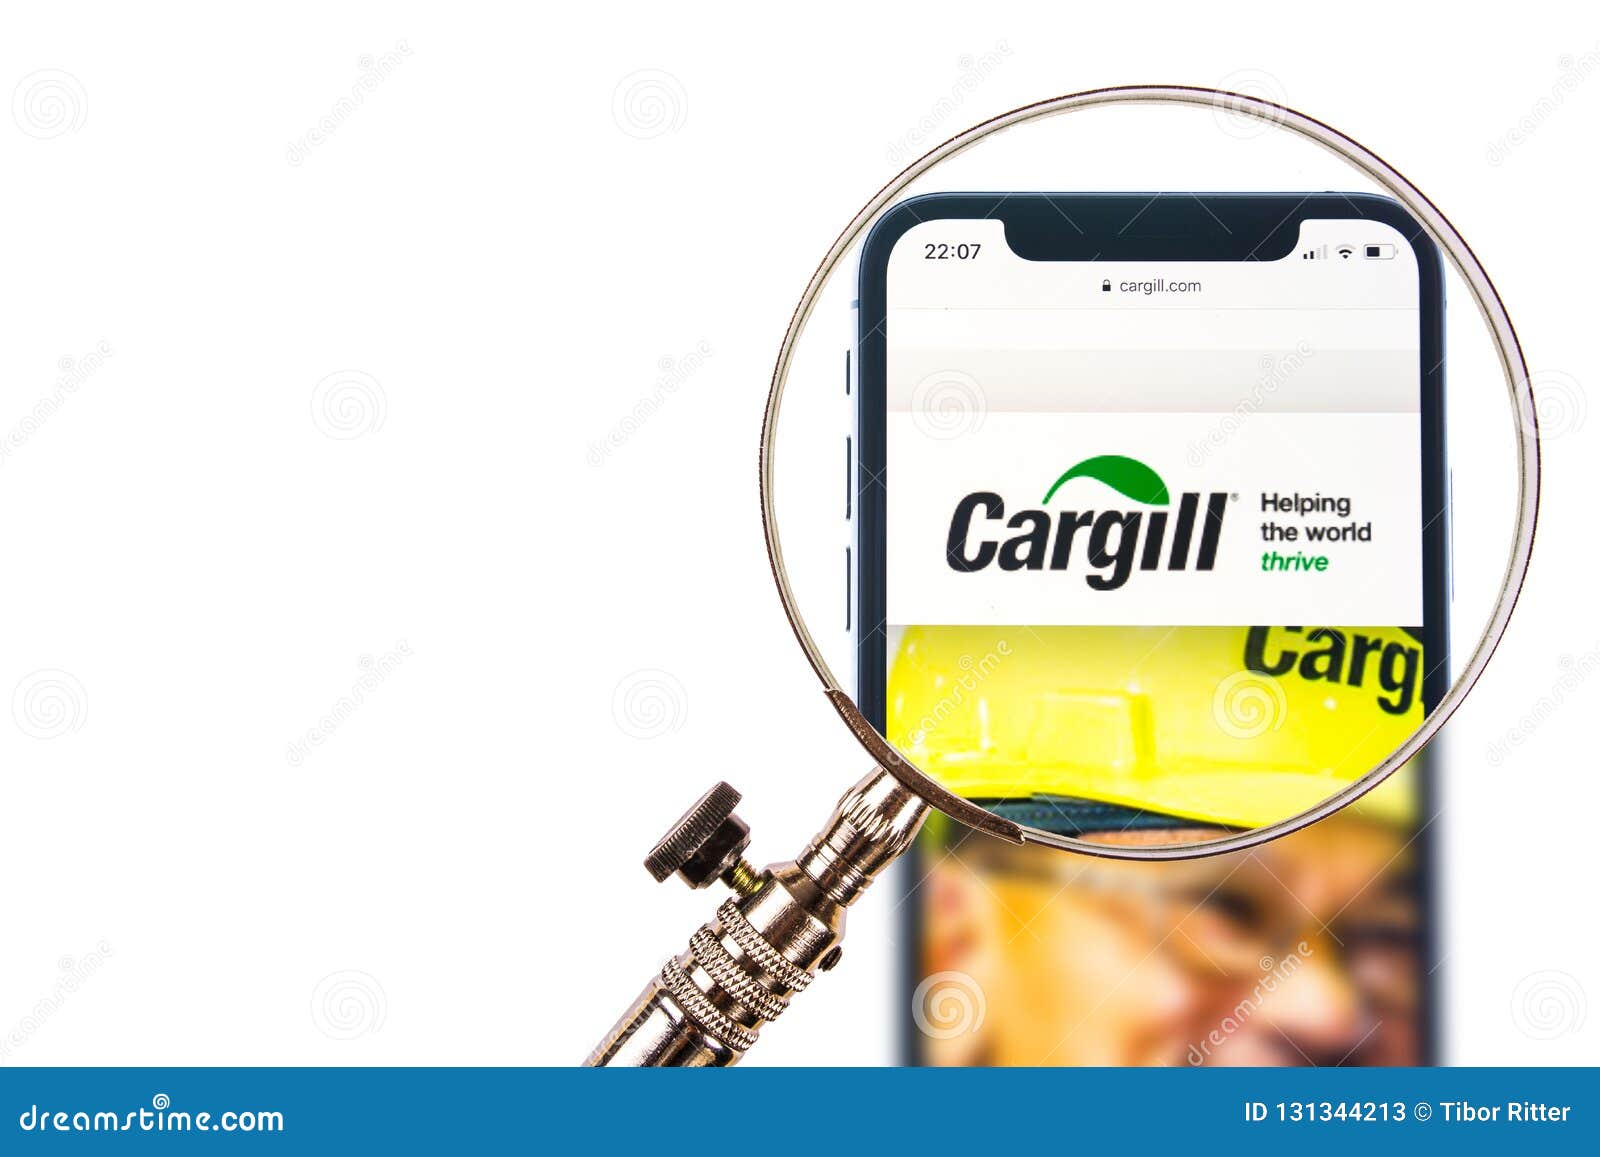 Cargill Stock Chart